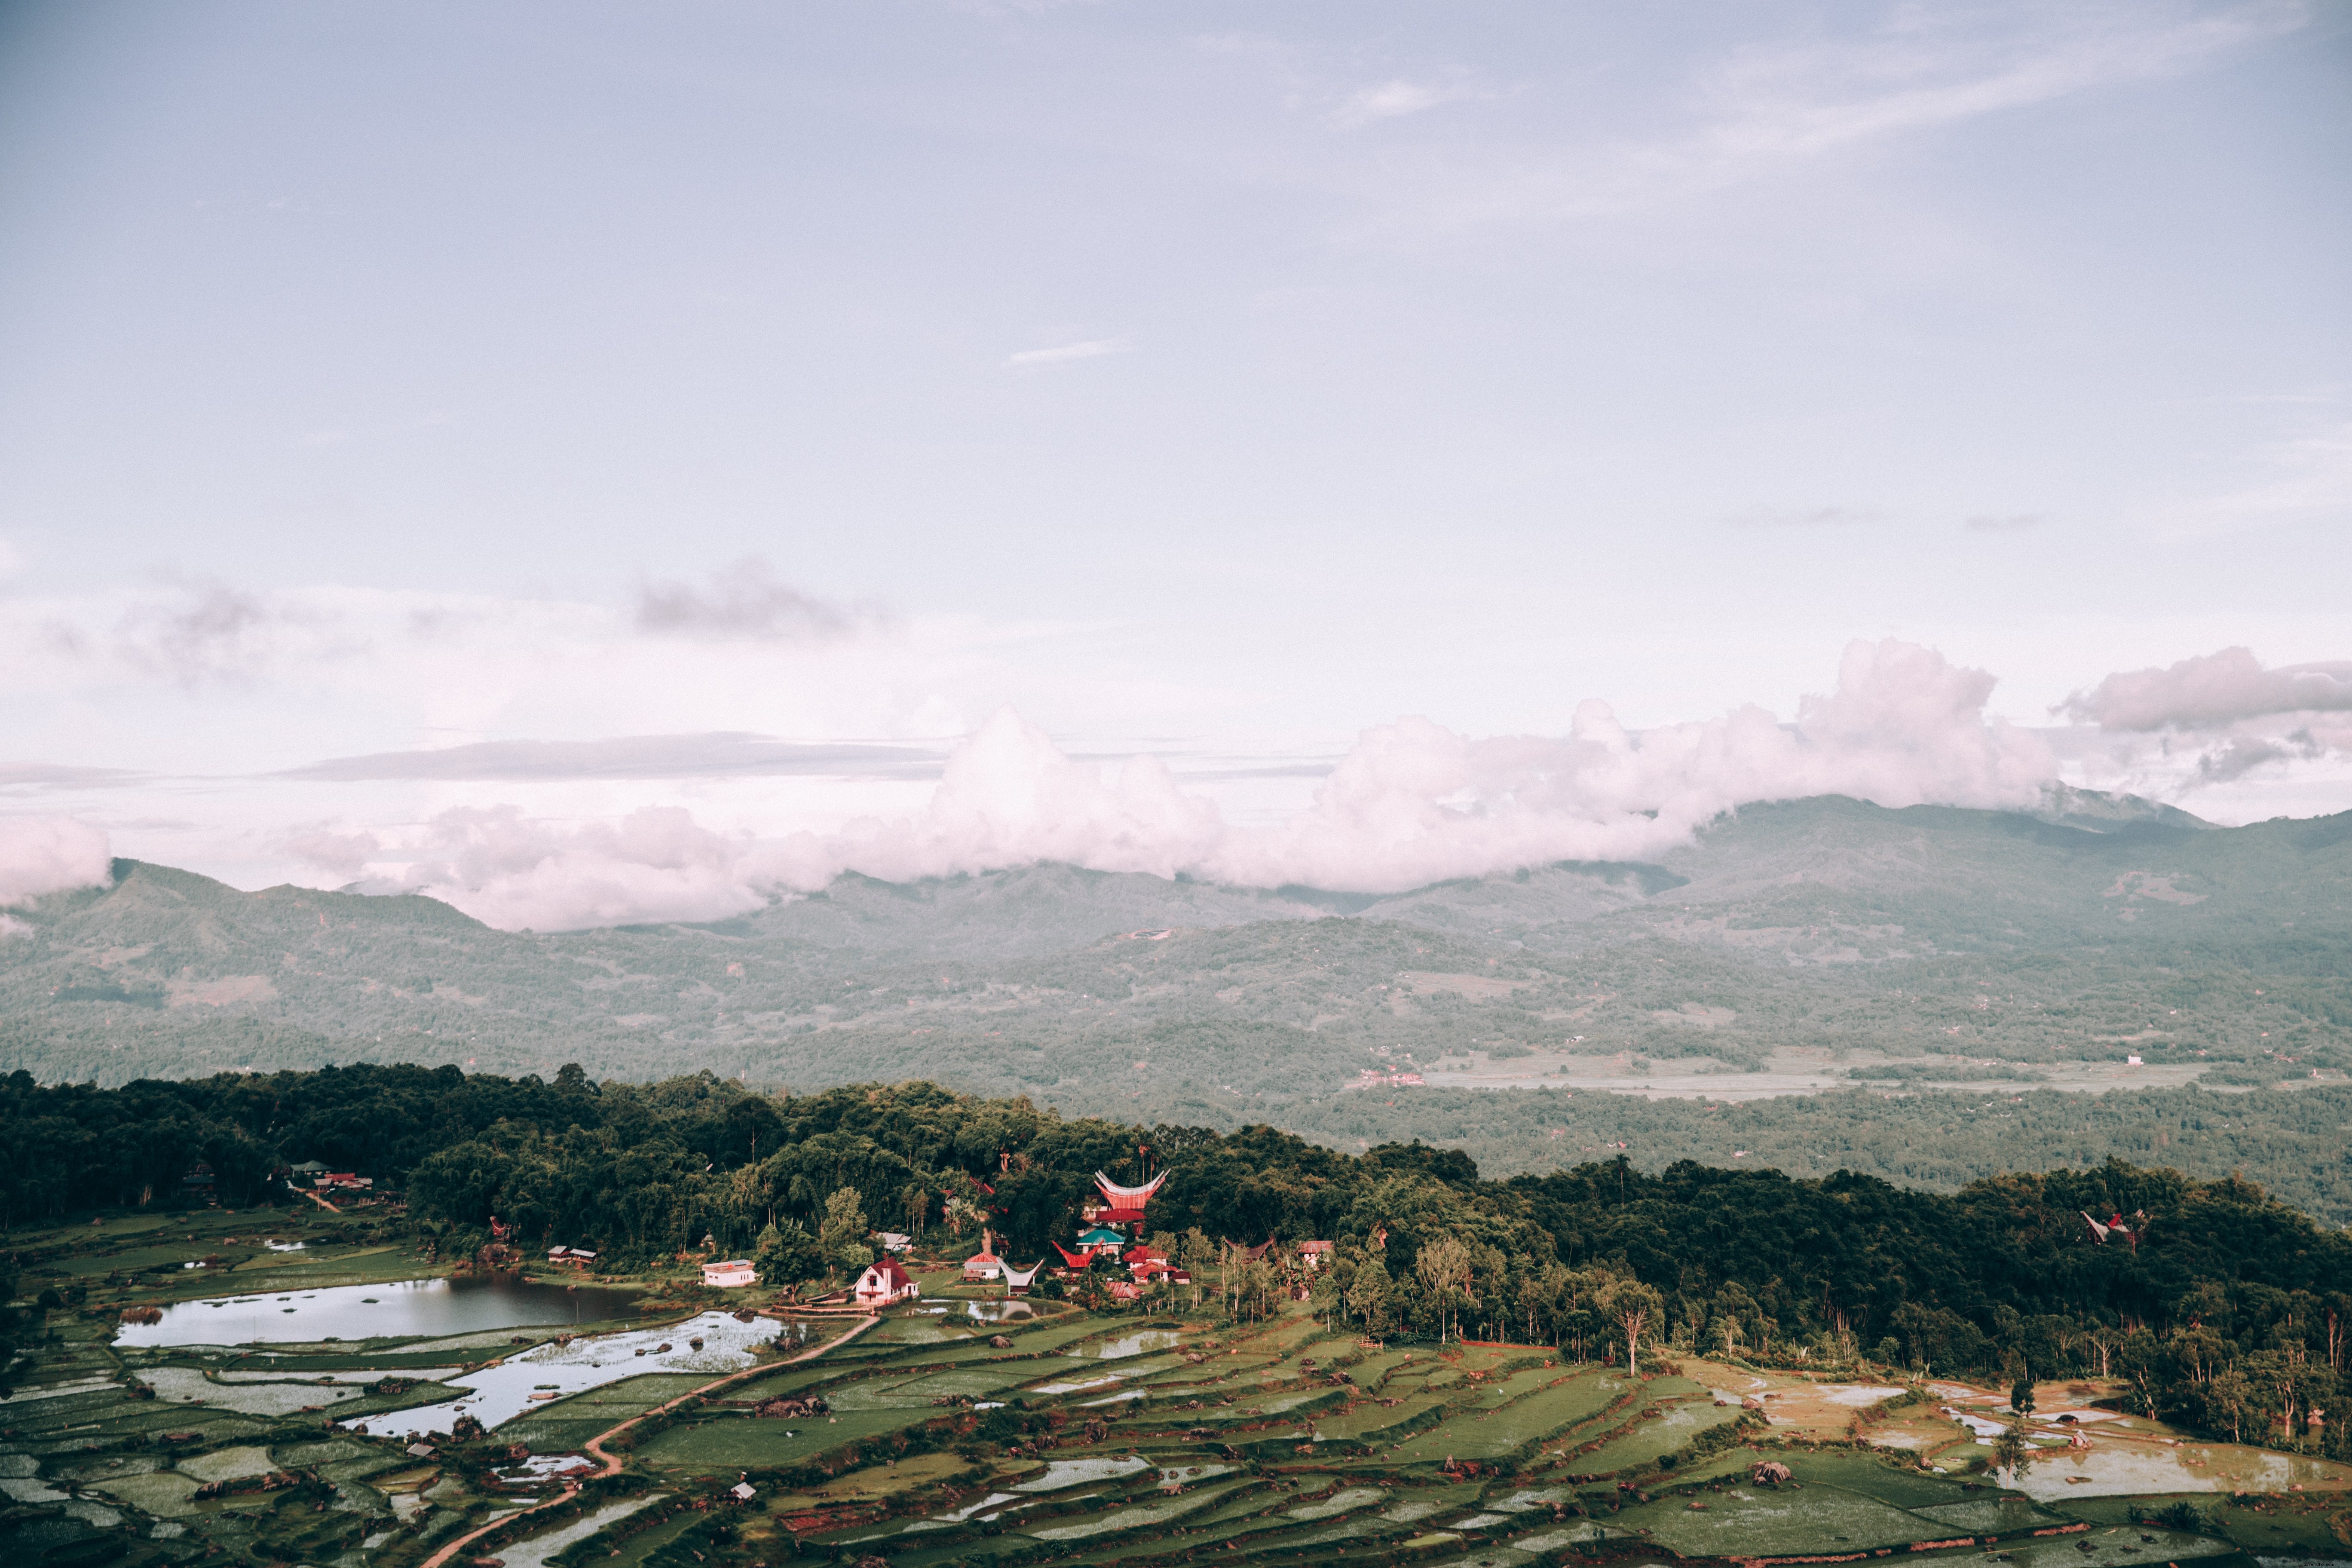 田んぼと寺院の写真で覆われたインドネシアの風景 